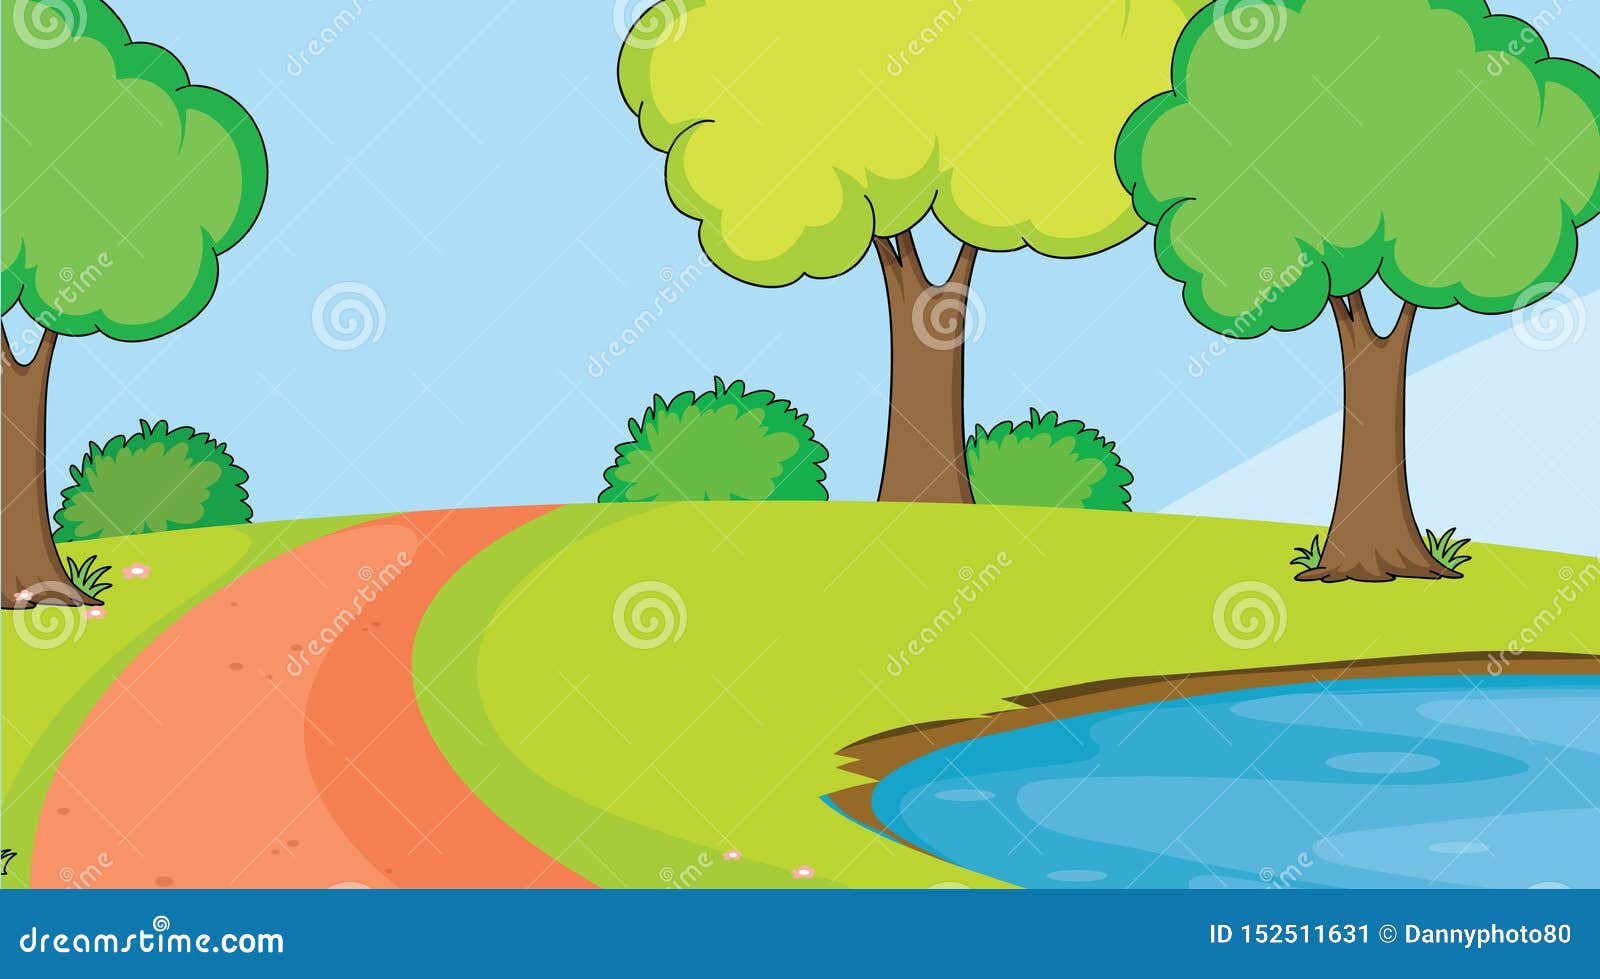 A simple landscape stock vector. cartoon - 152511631